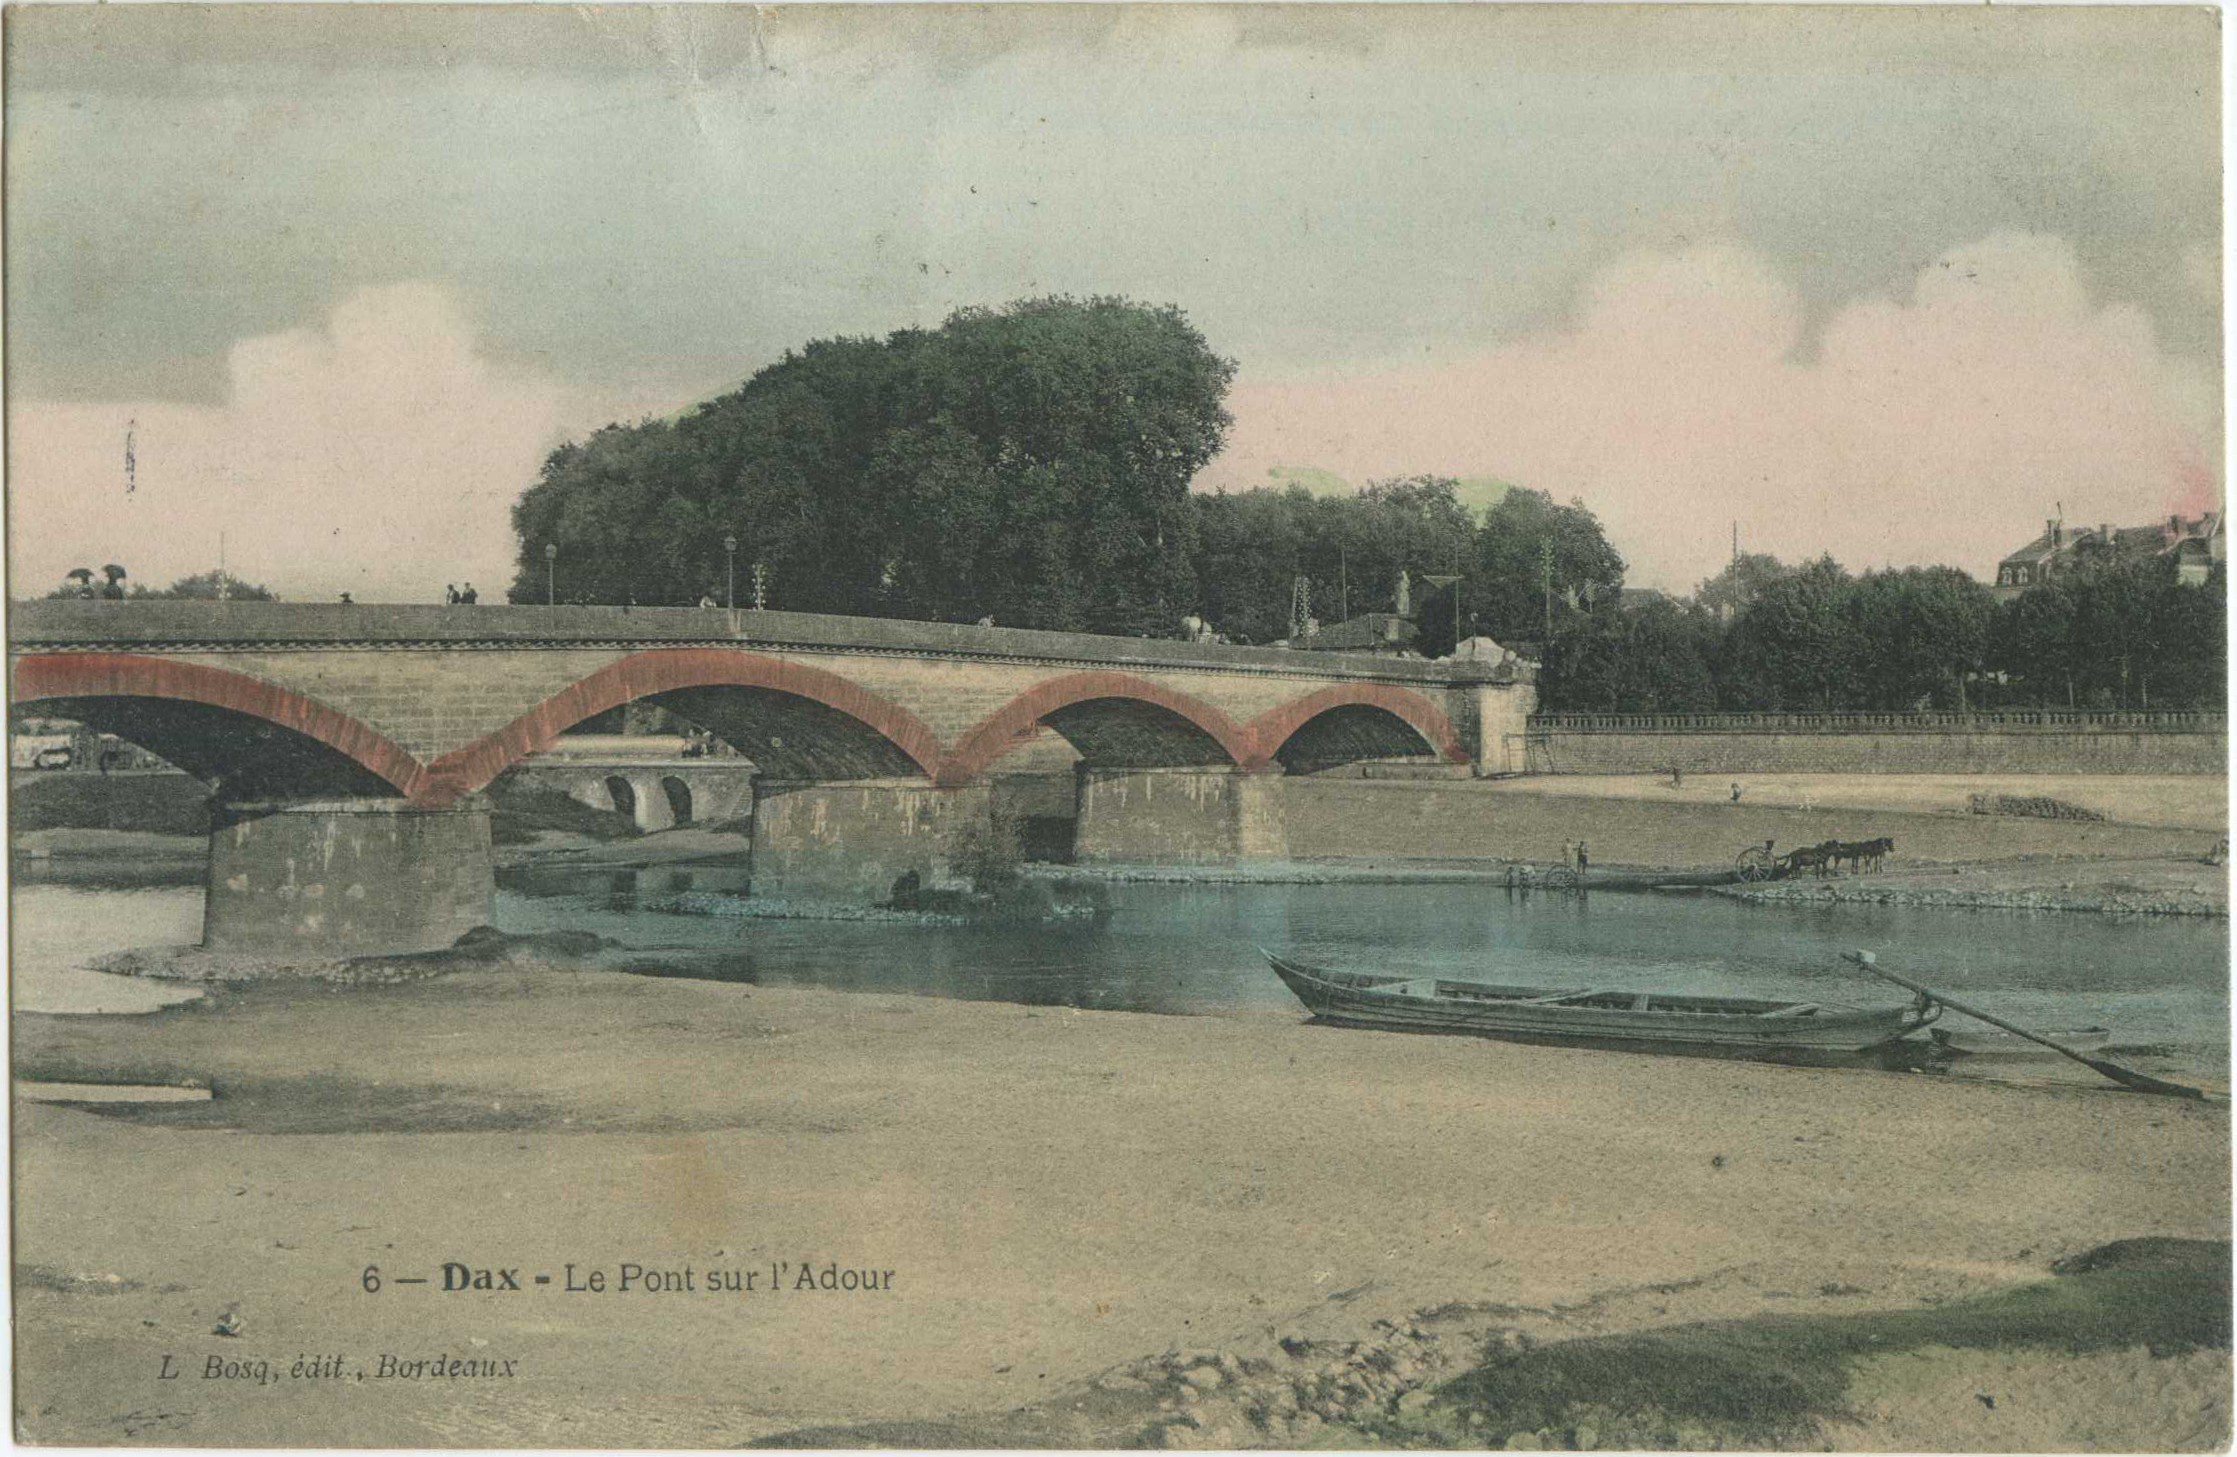 Dax - Le Pont sur l'Adour